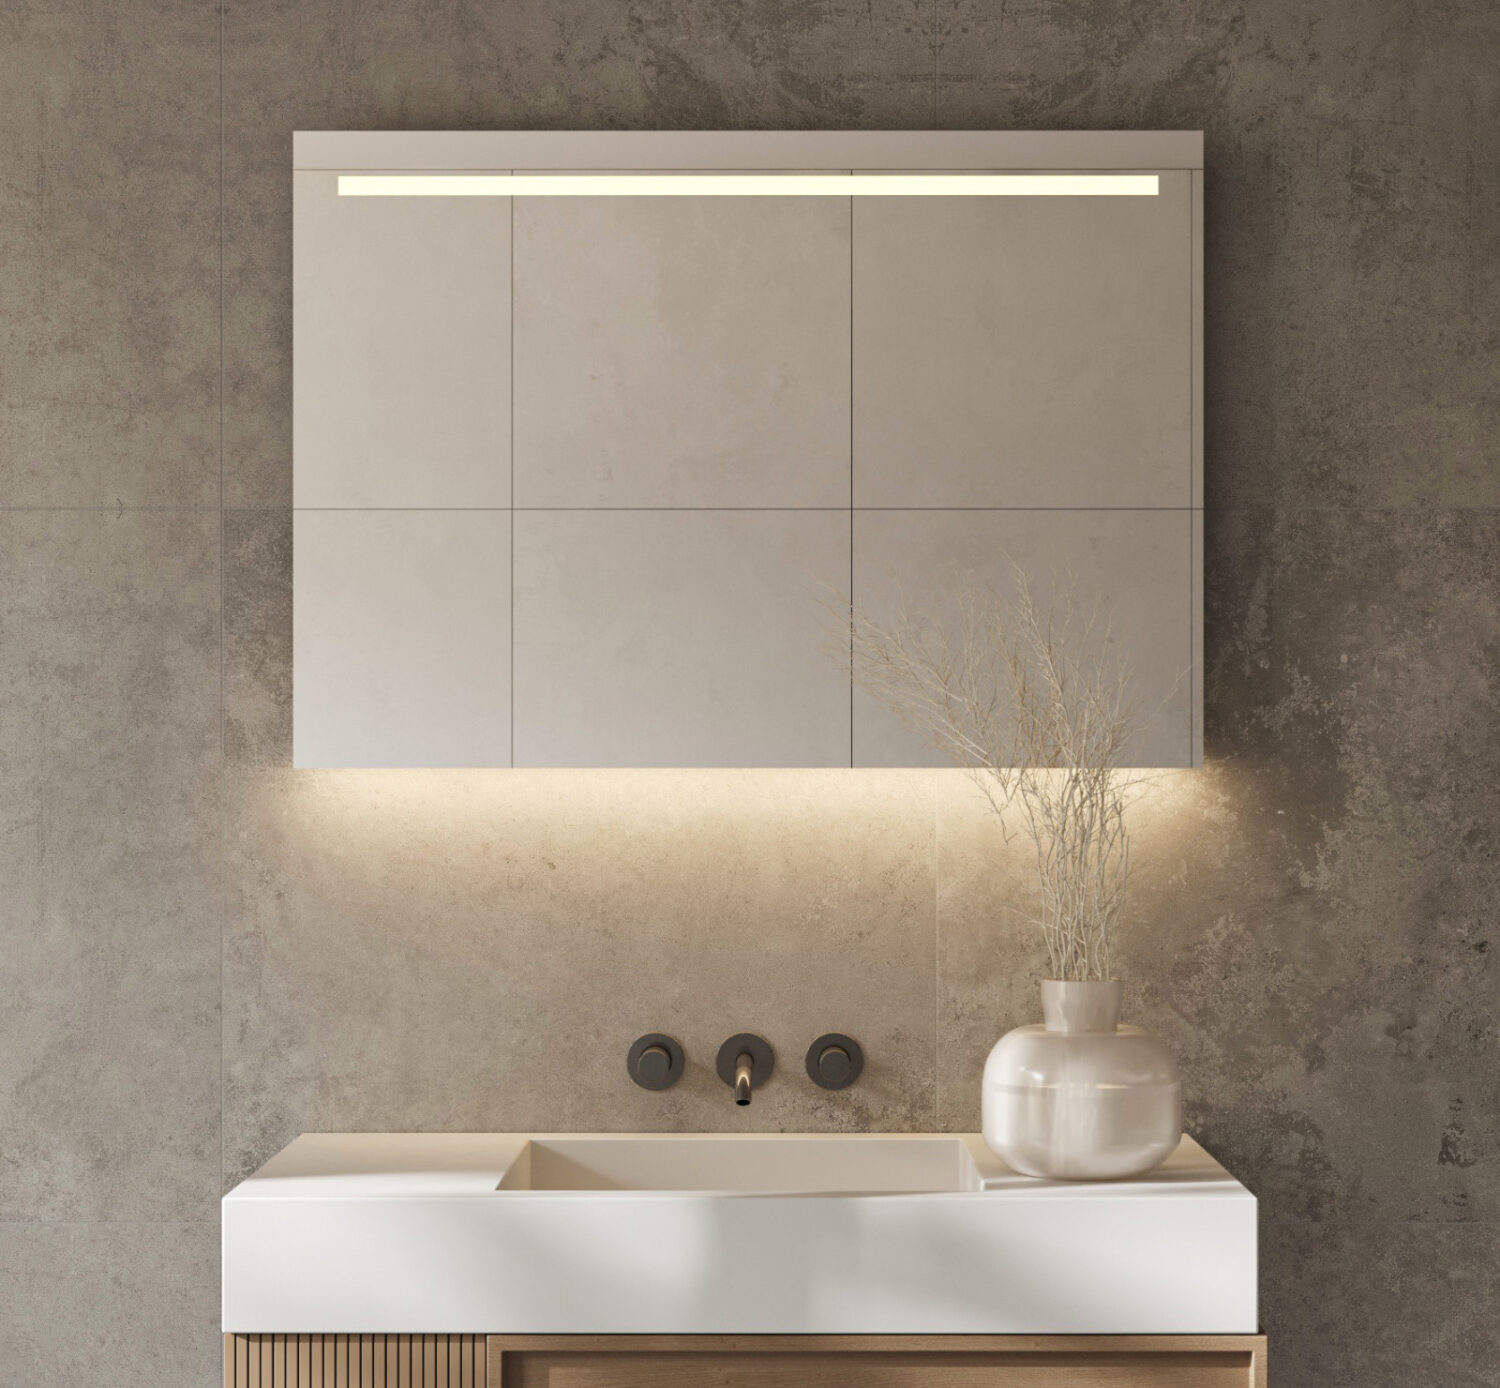 Deze stijlvolle, strakke badkamer spiegel is van alle gemakken voorzien, zoals verlichting, spiegelverwarming en een sensor schakelaar met dimfunctie